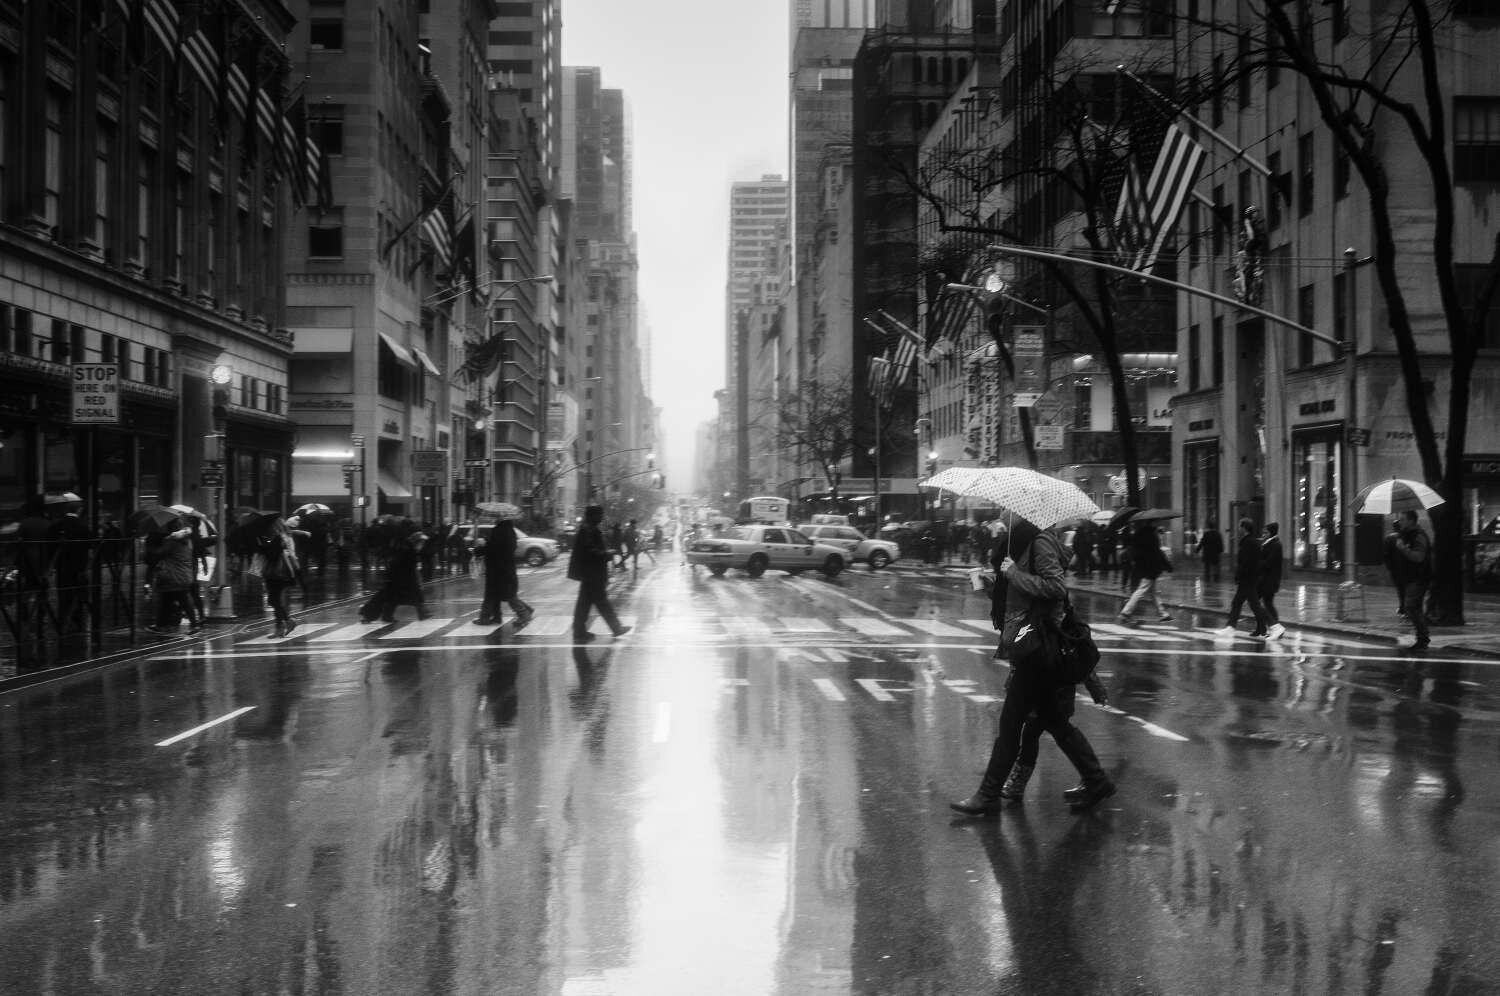 Raining+on+Fifth+Avenue-Exposure.jpg